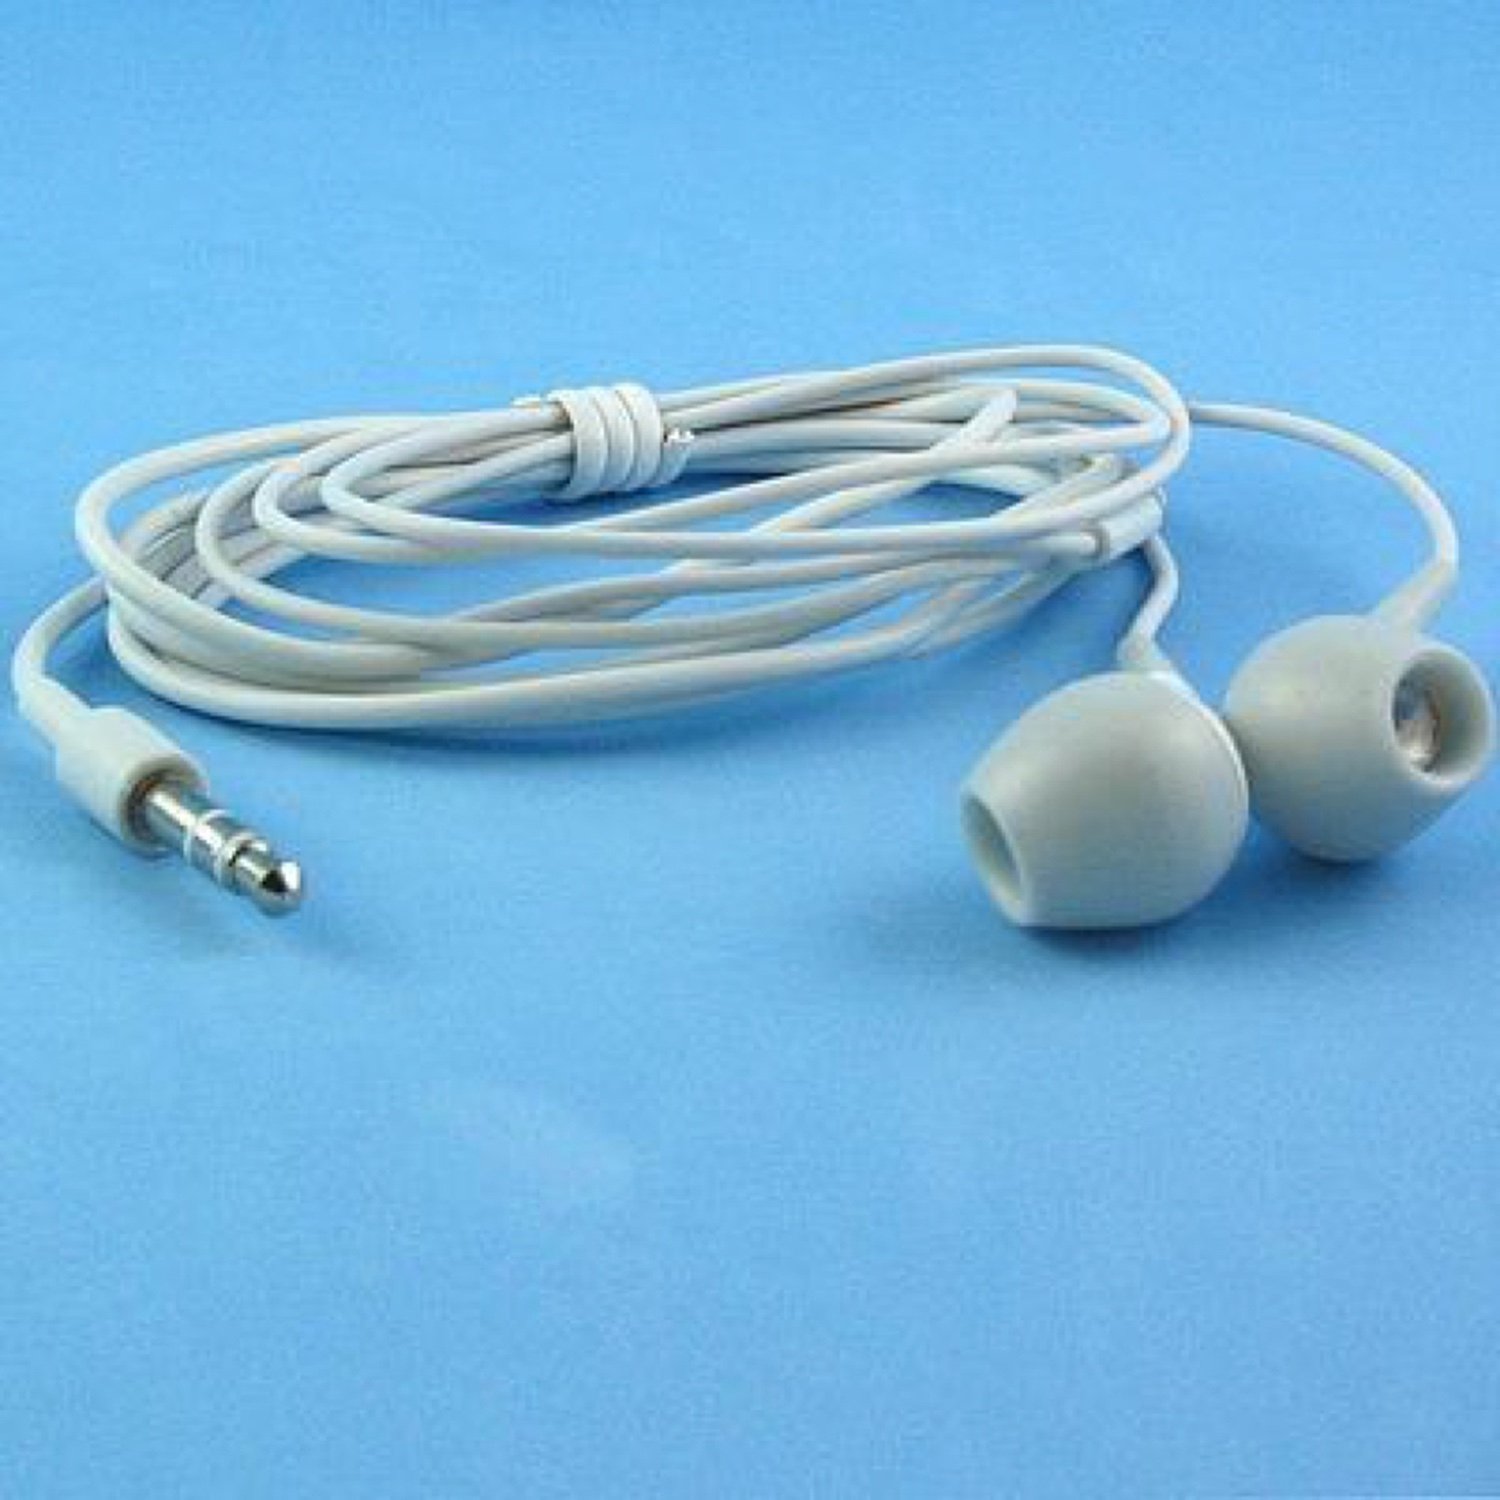 Mini-Koptelefoon Voor Ipod (Witte Kleur)